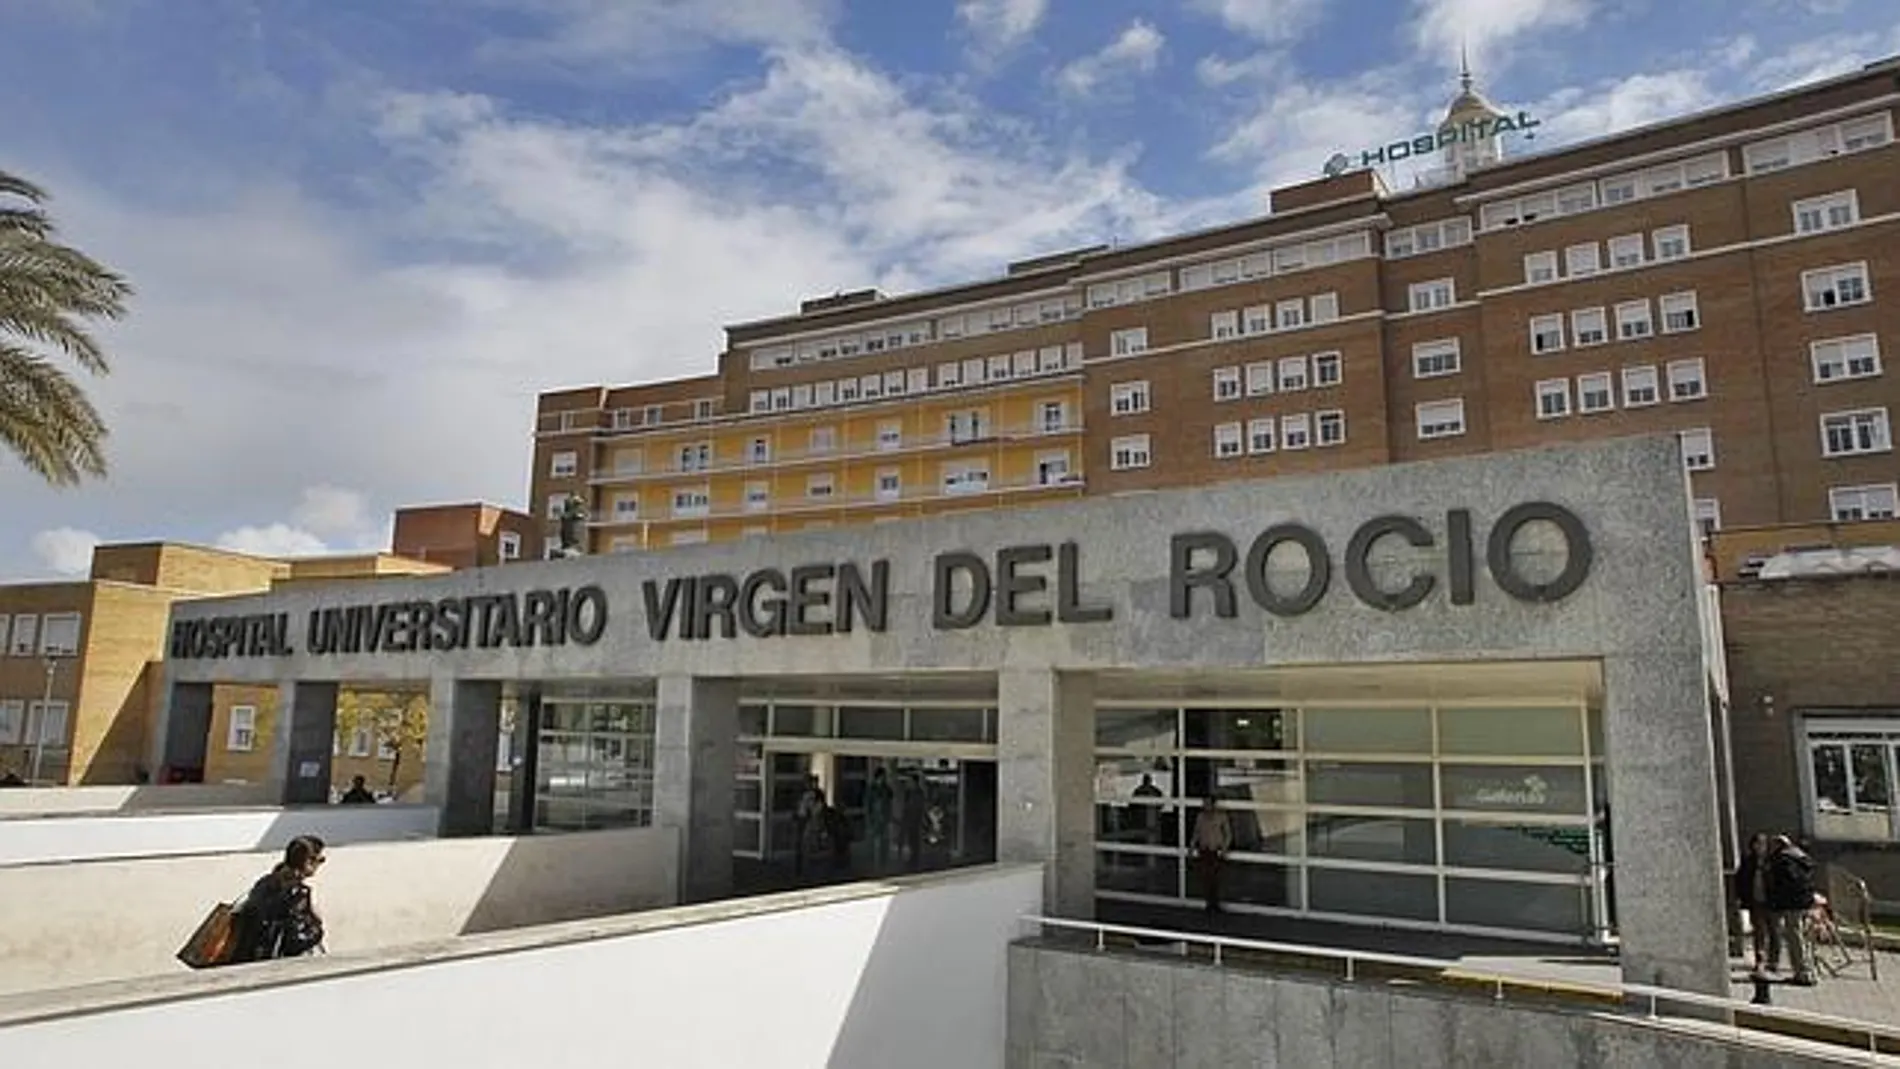 Los padres llevaron al menor al Hospital Universitario Virgen del Rocío